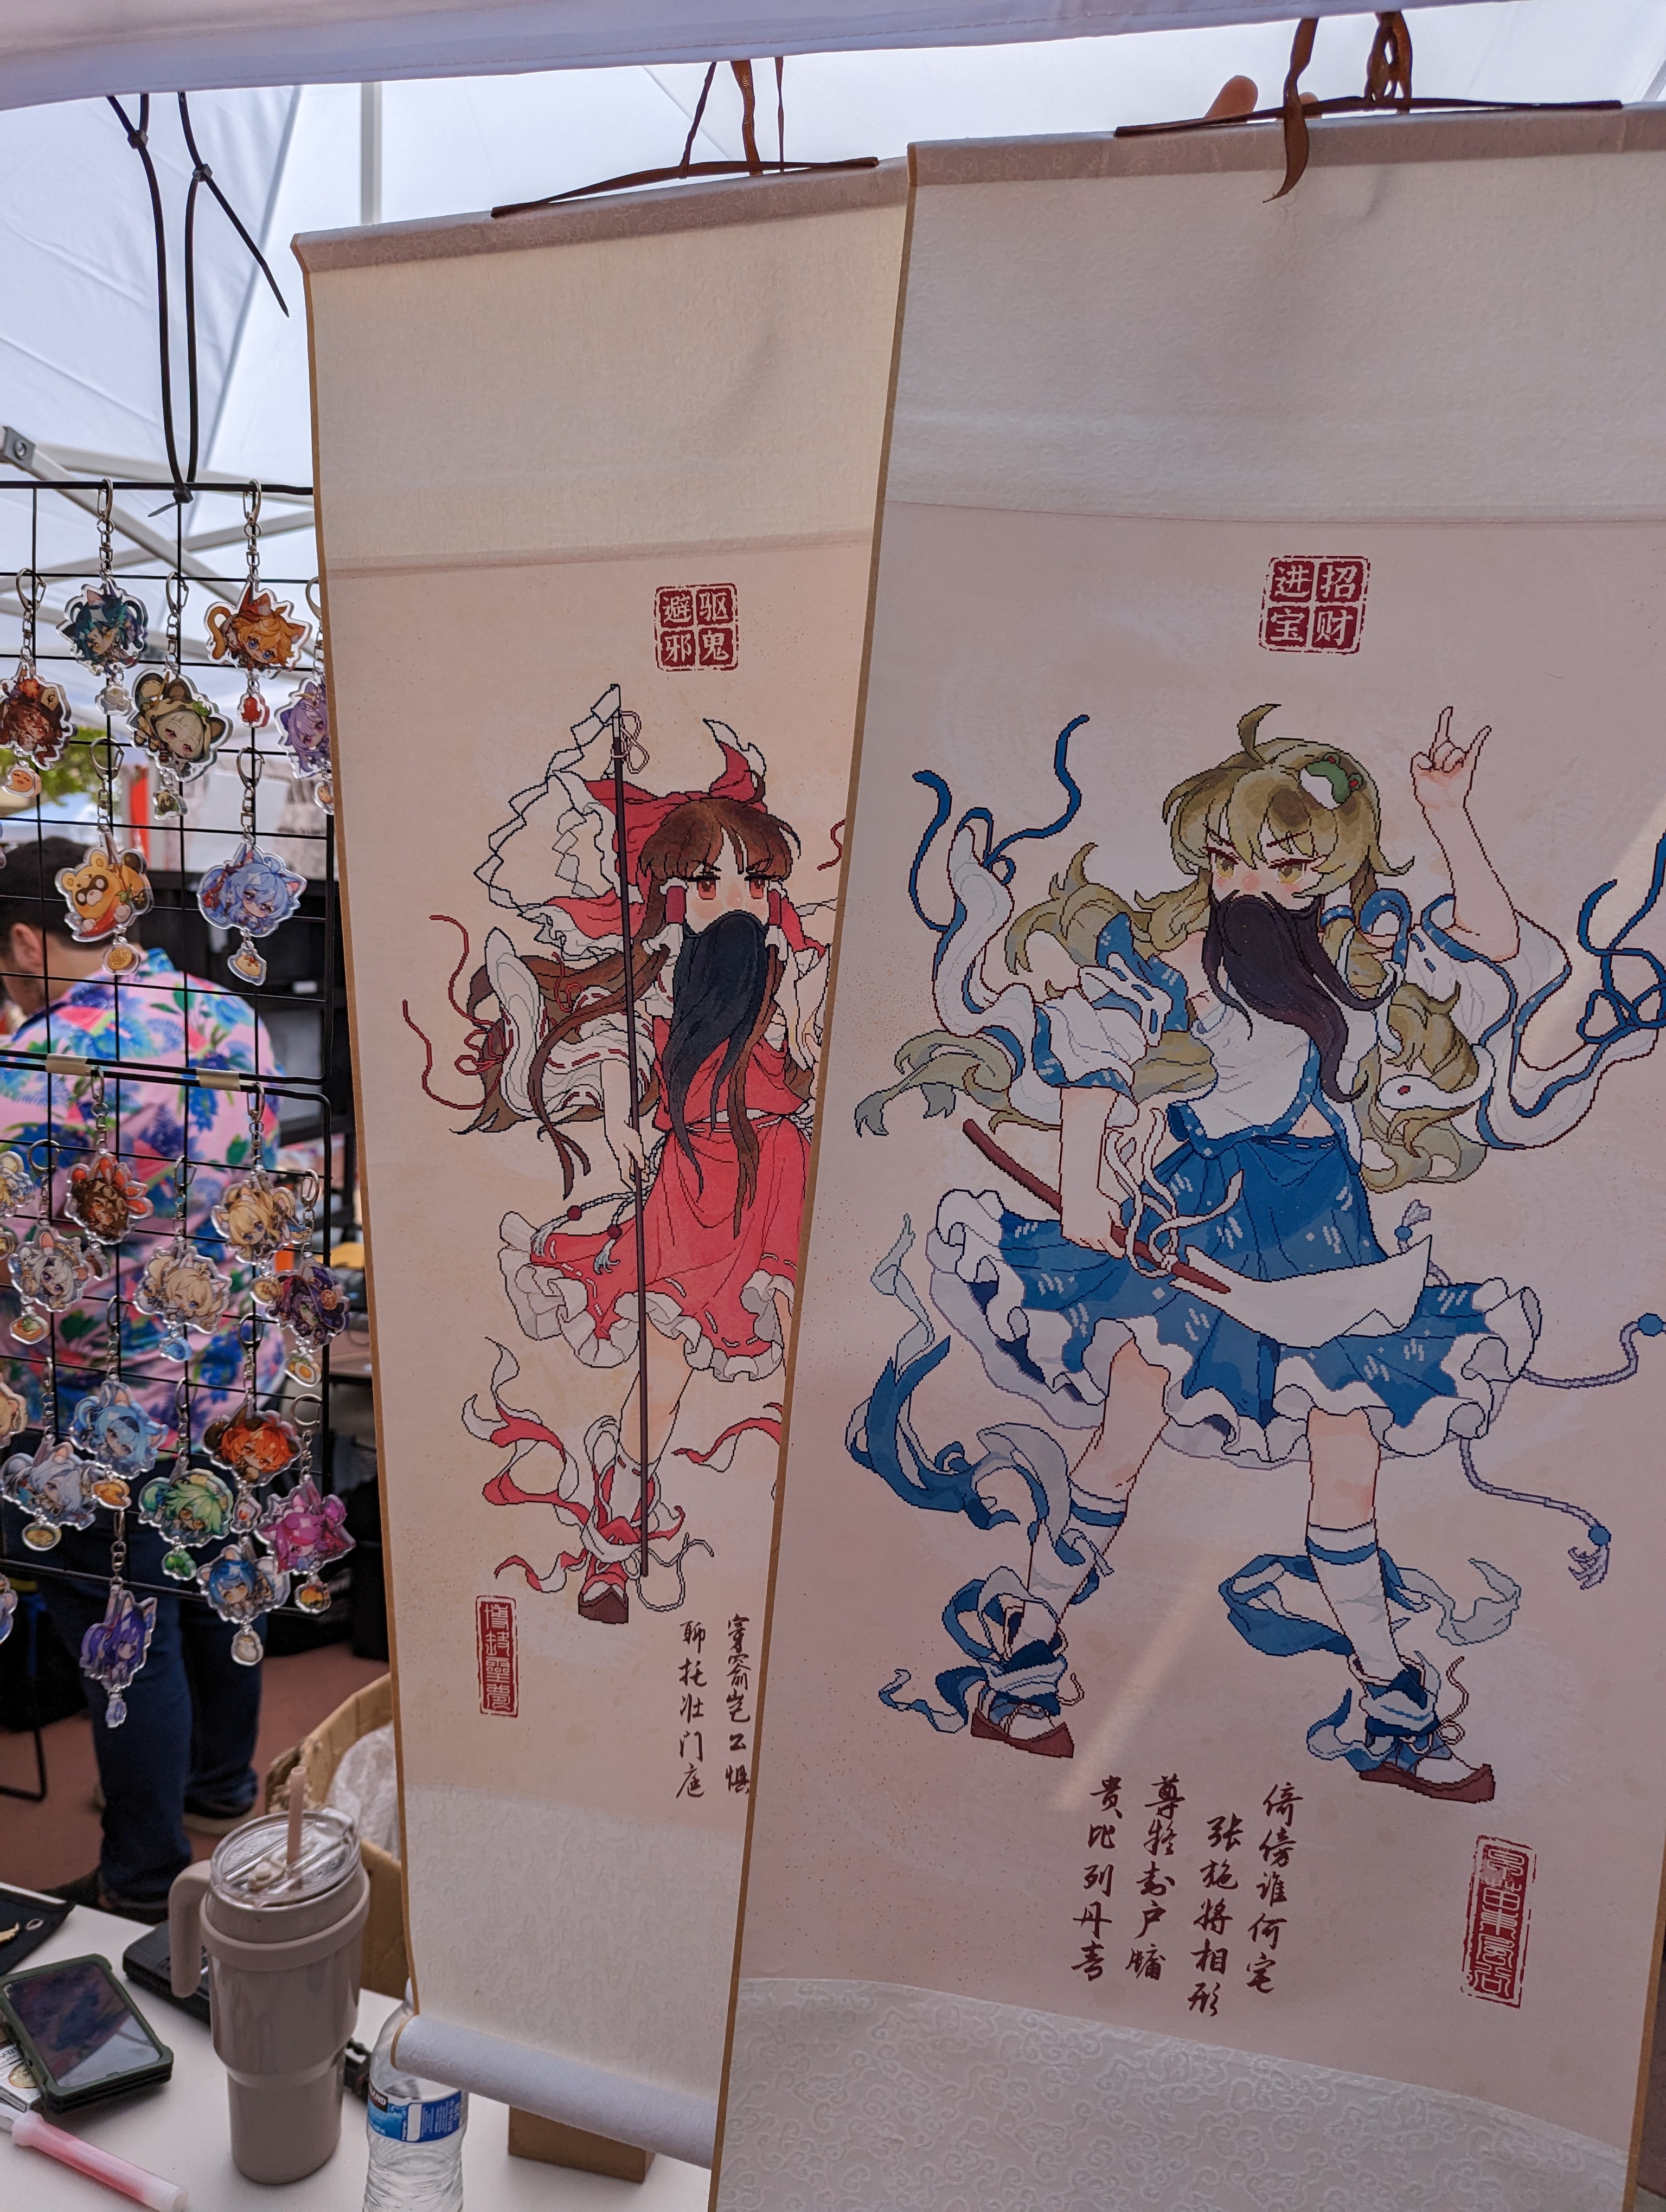 Two white wall scrolls of Reimu Hakurei and Sanae Kochiya drawn in the style of Chinese door gods